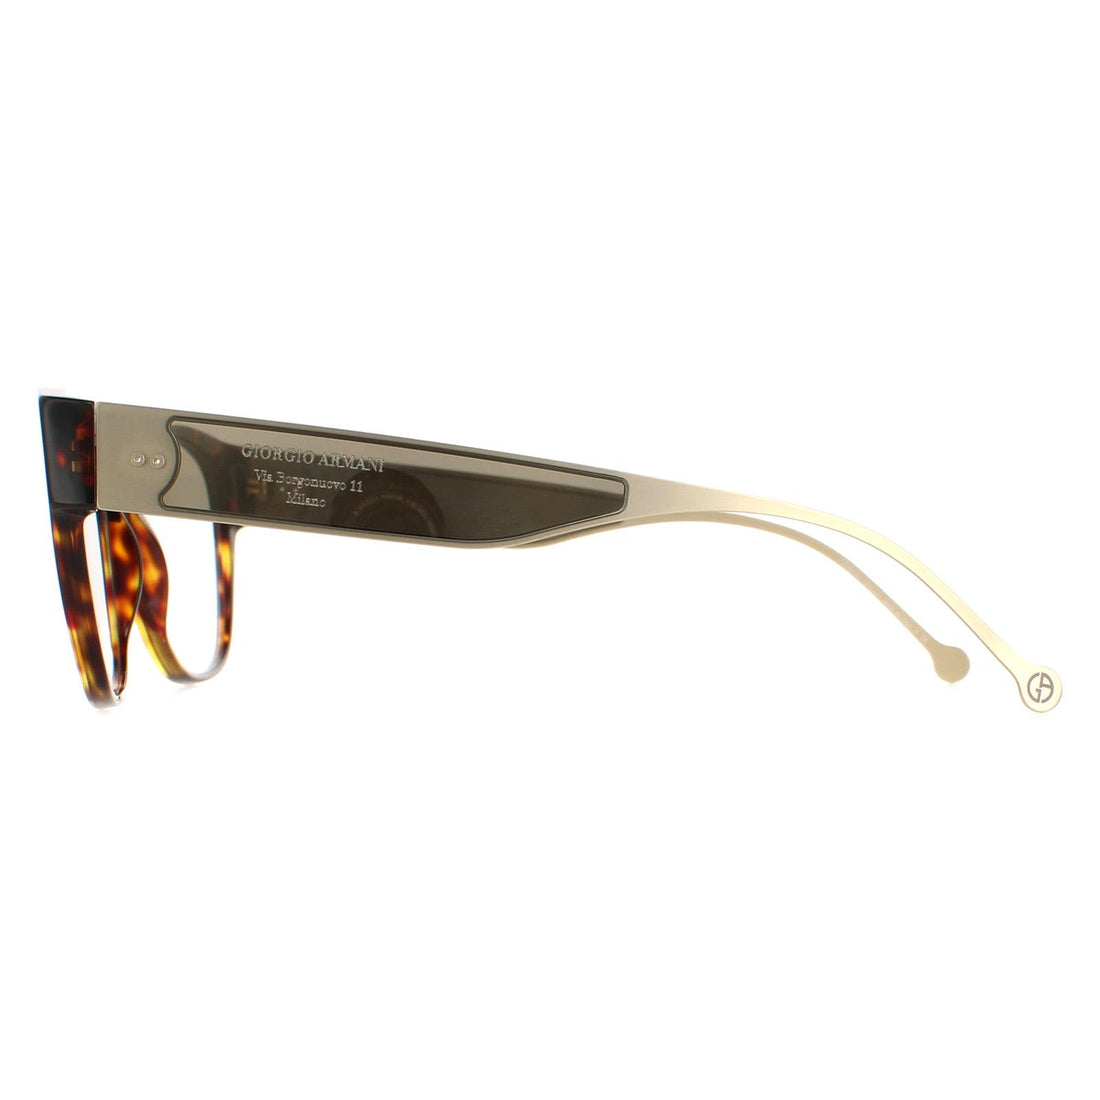 Giorgio Armani AR7169 Glasses Frames